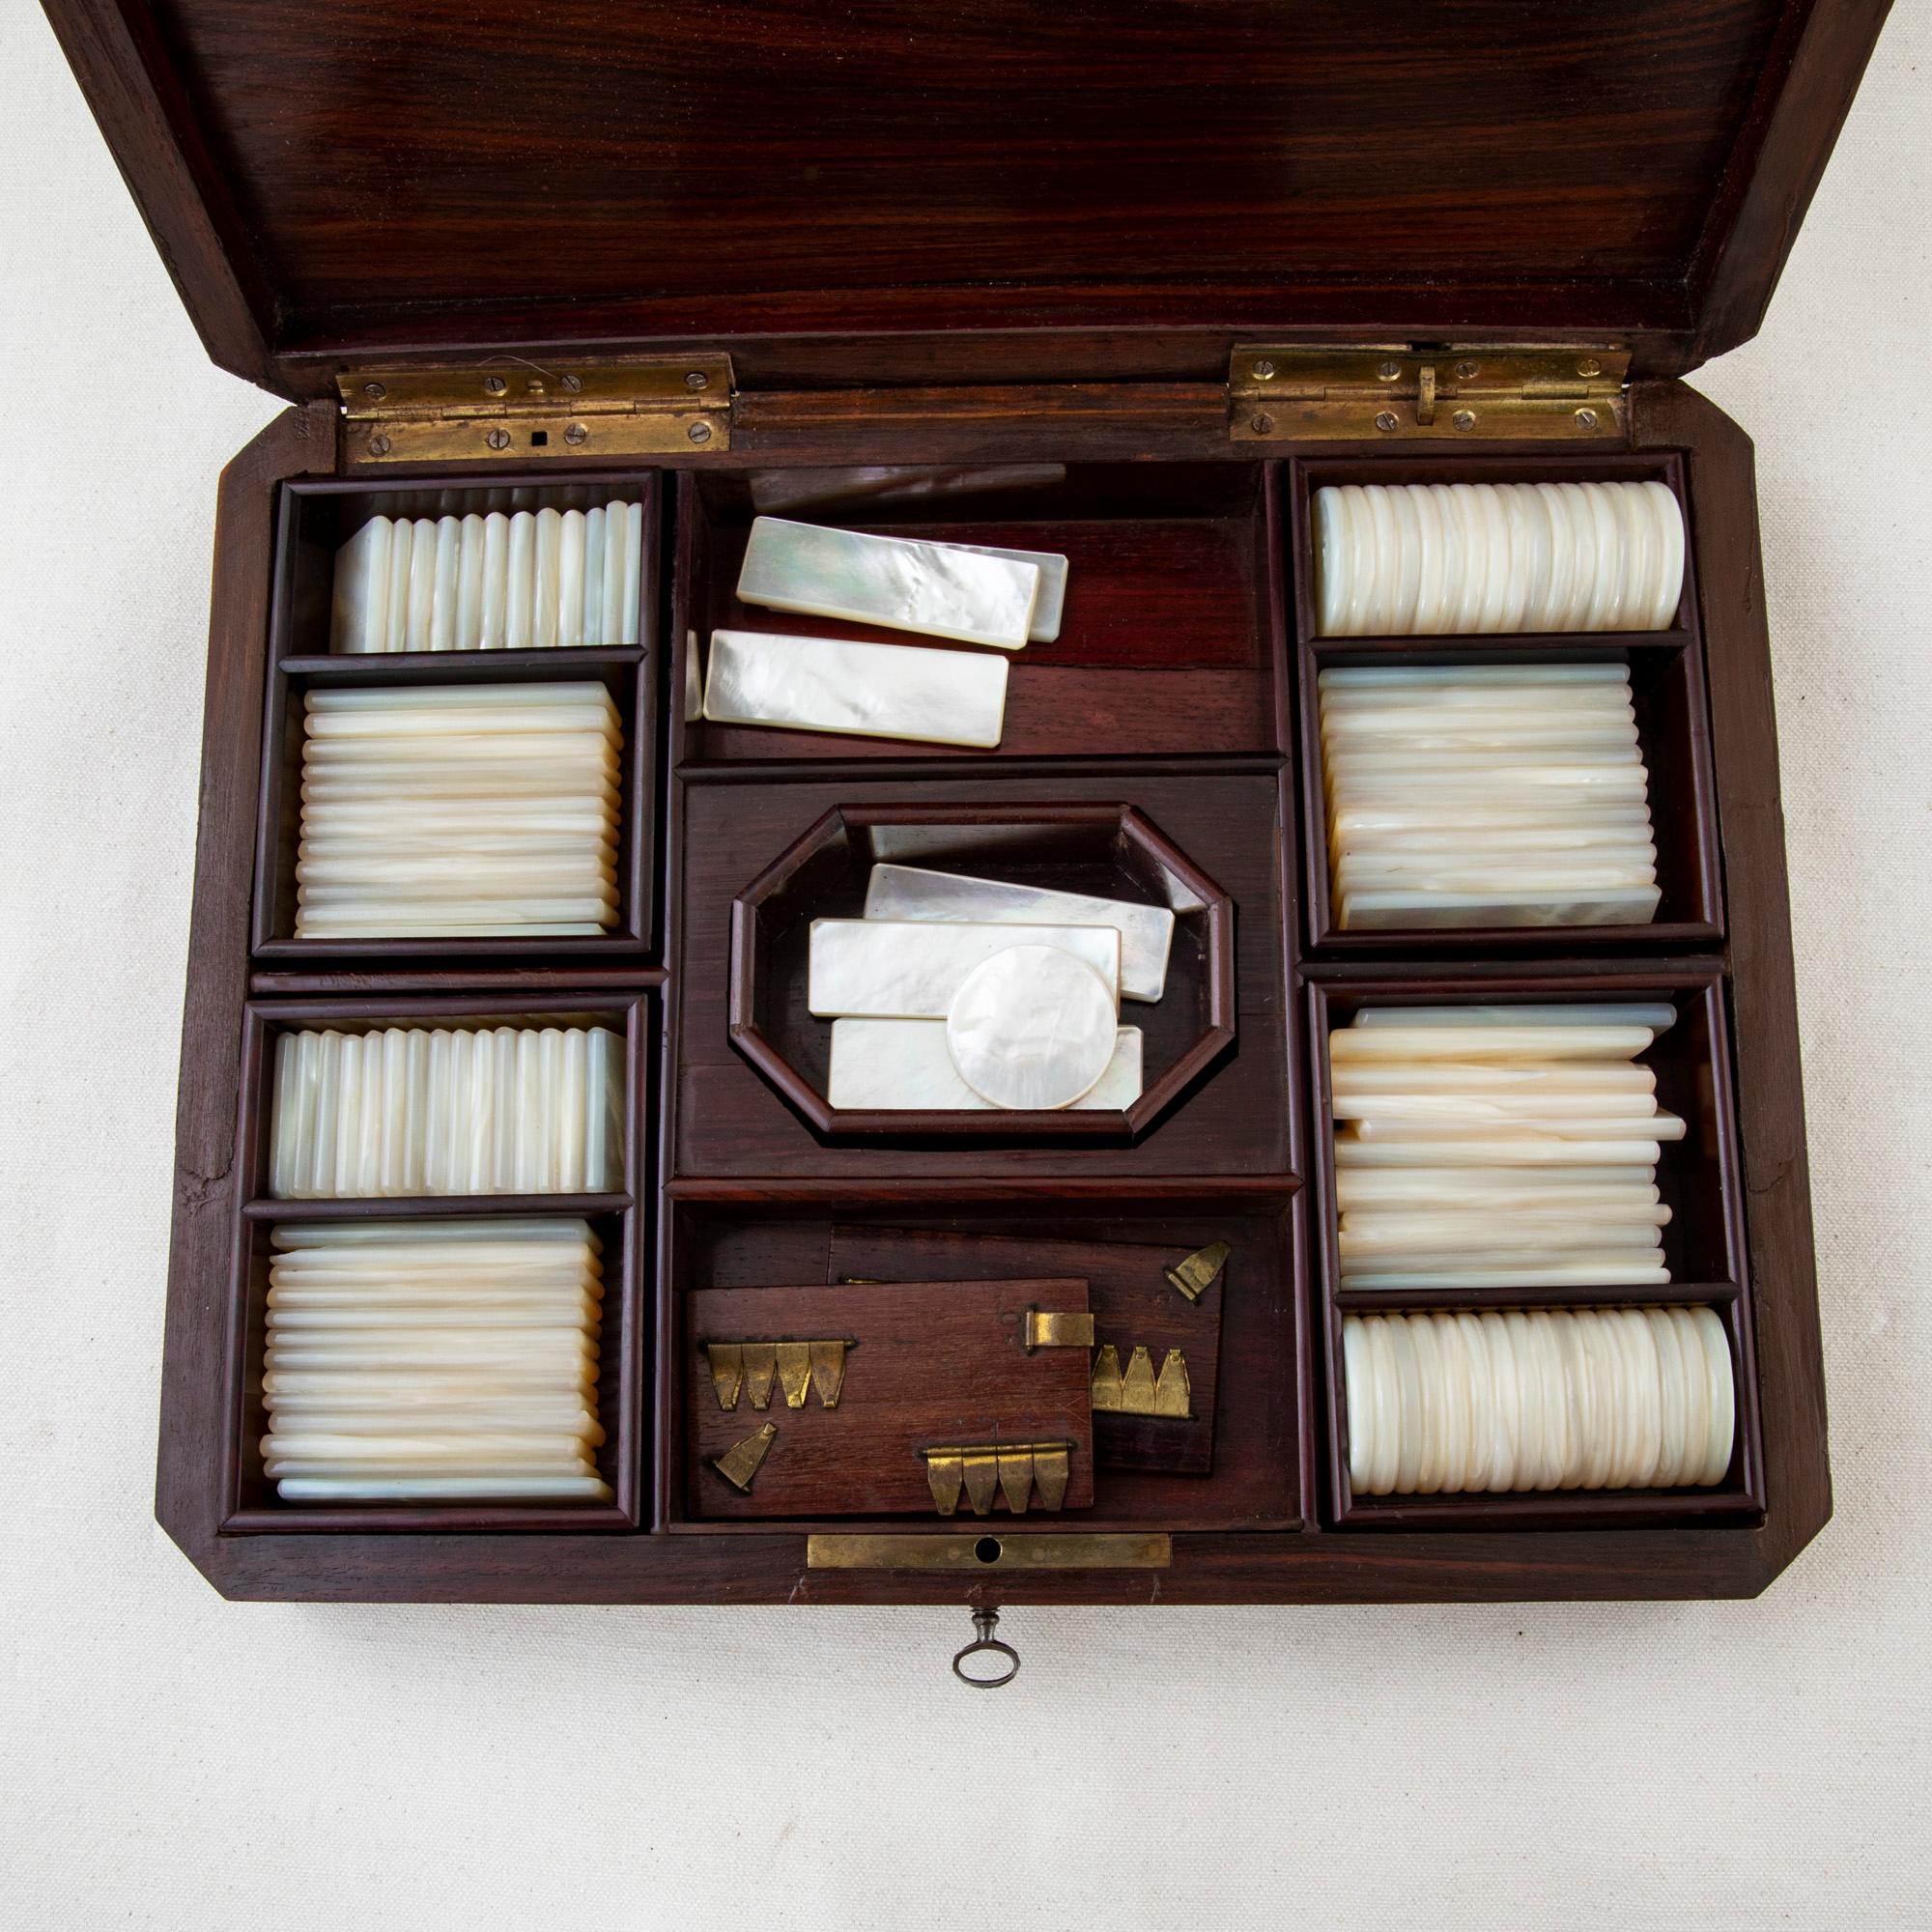 Cette boîte à jeu en marqueterie Napoléon III du milieu du XIXe siècle est fabriquée en bois de rose, en poirier ébonisé et en thuya. Elle comporte un cartouche central en bronze détaillé avec des incrustations de nacre. A l'intérieur, cinq plateaux